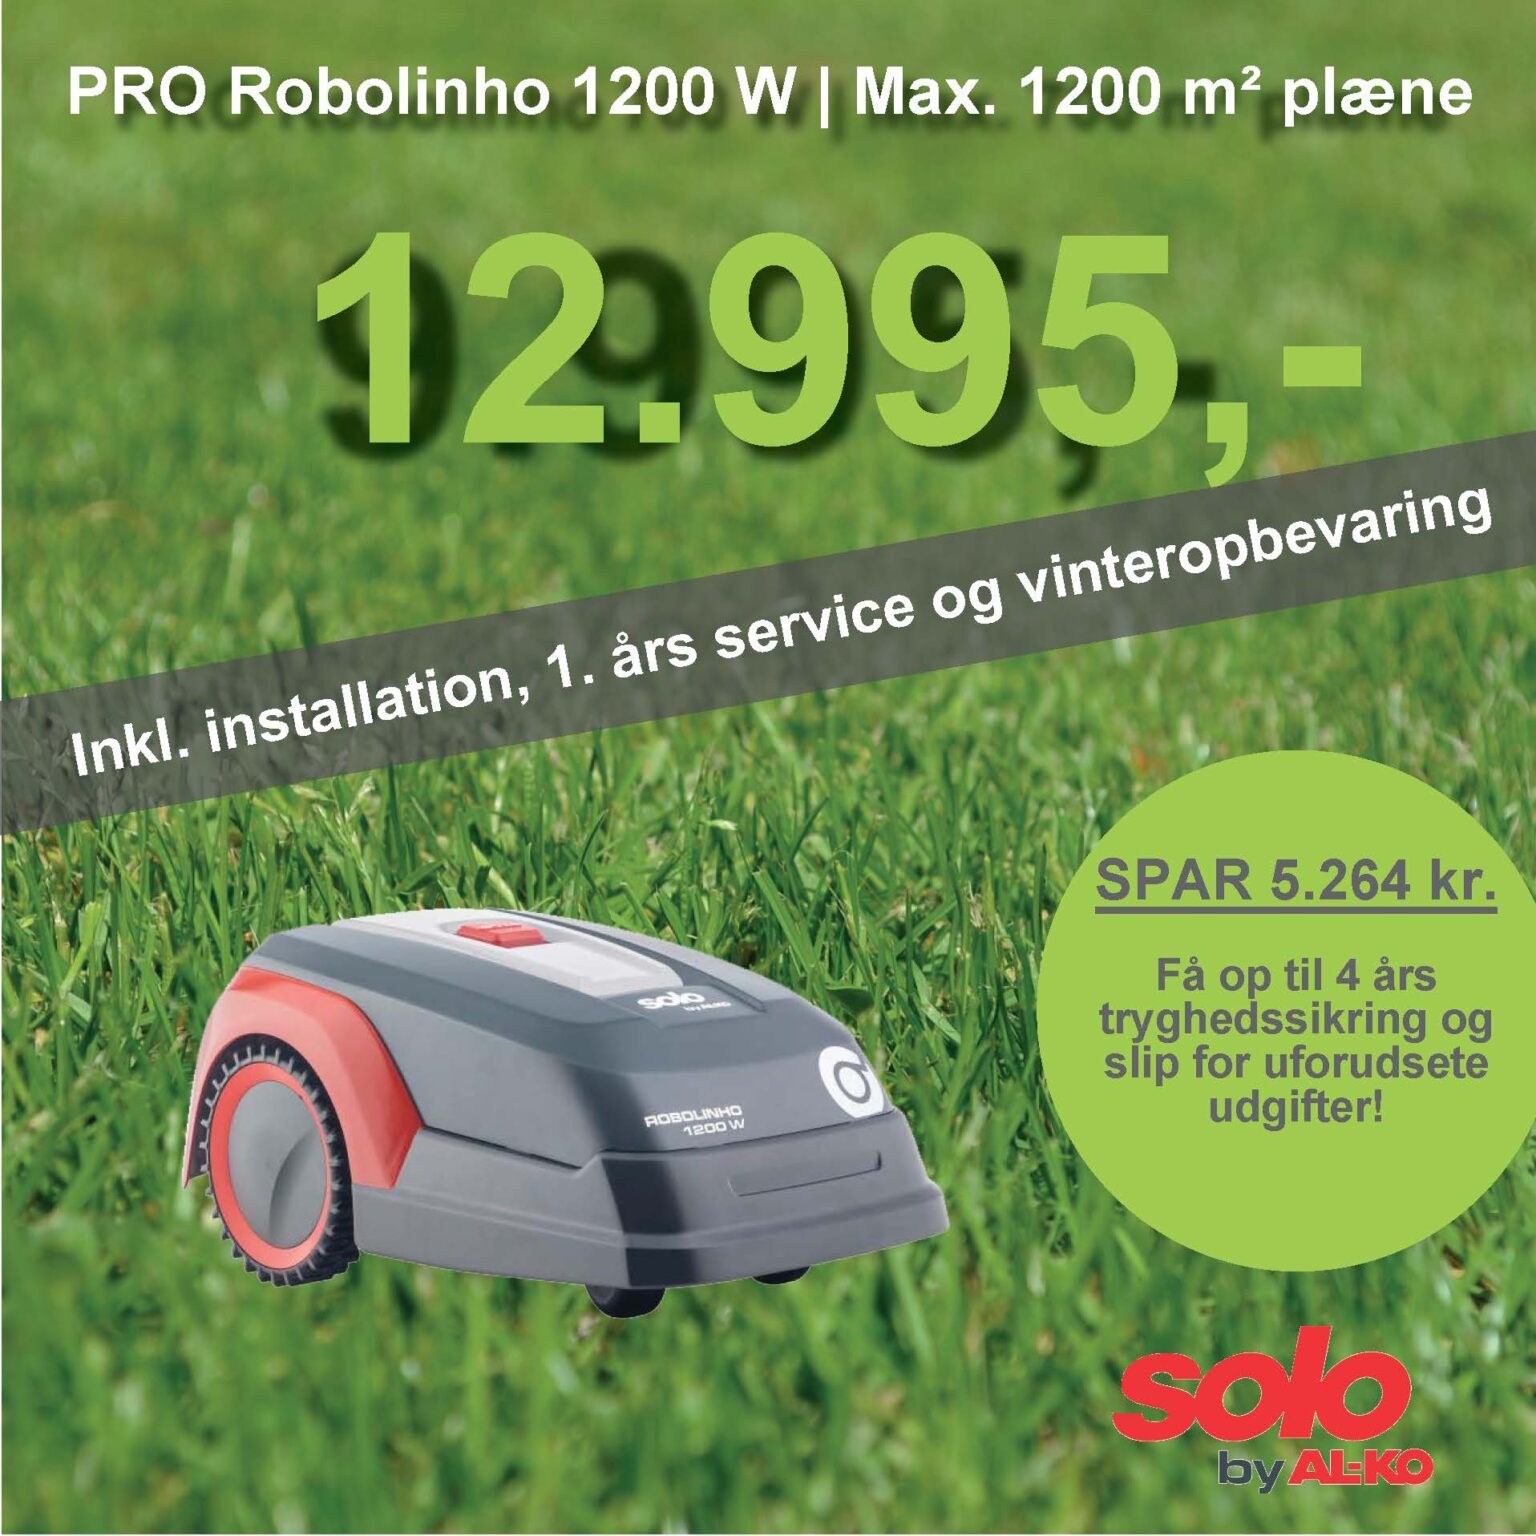 Solo robotplæneklipper Premium PRO Robolinho 1200 W - 1200m2 inkl. installation, 1. års service og vinteropbevaring.